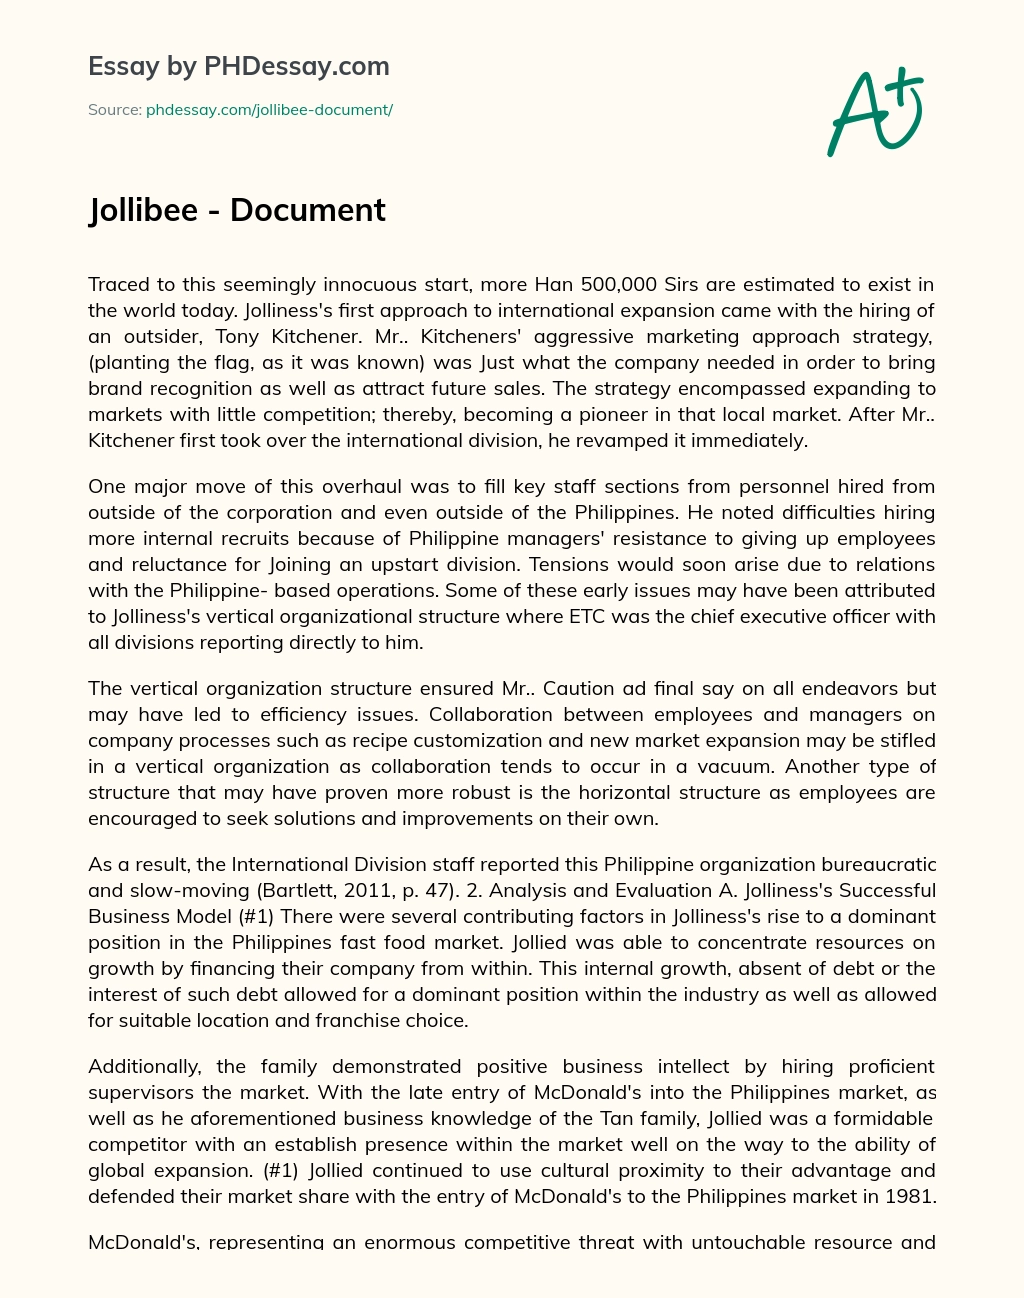 Jollibee – Document essay